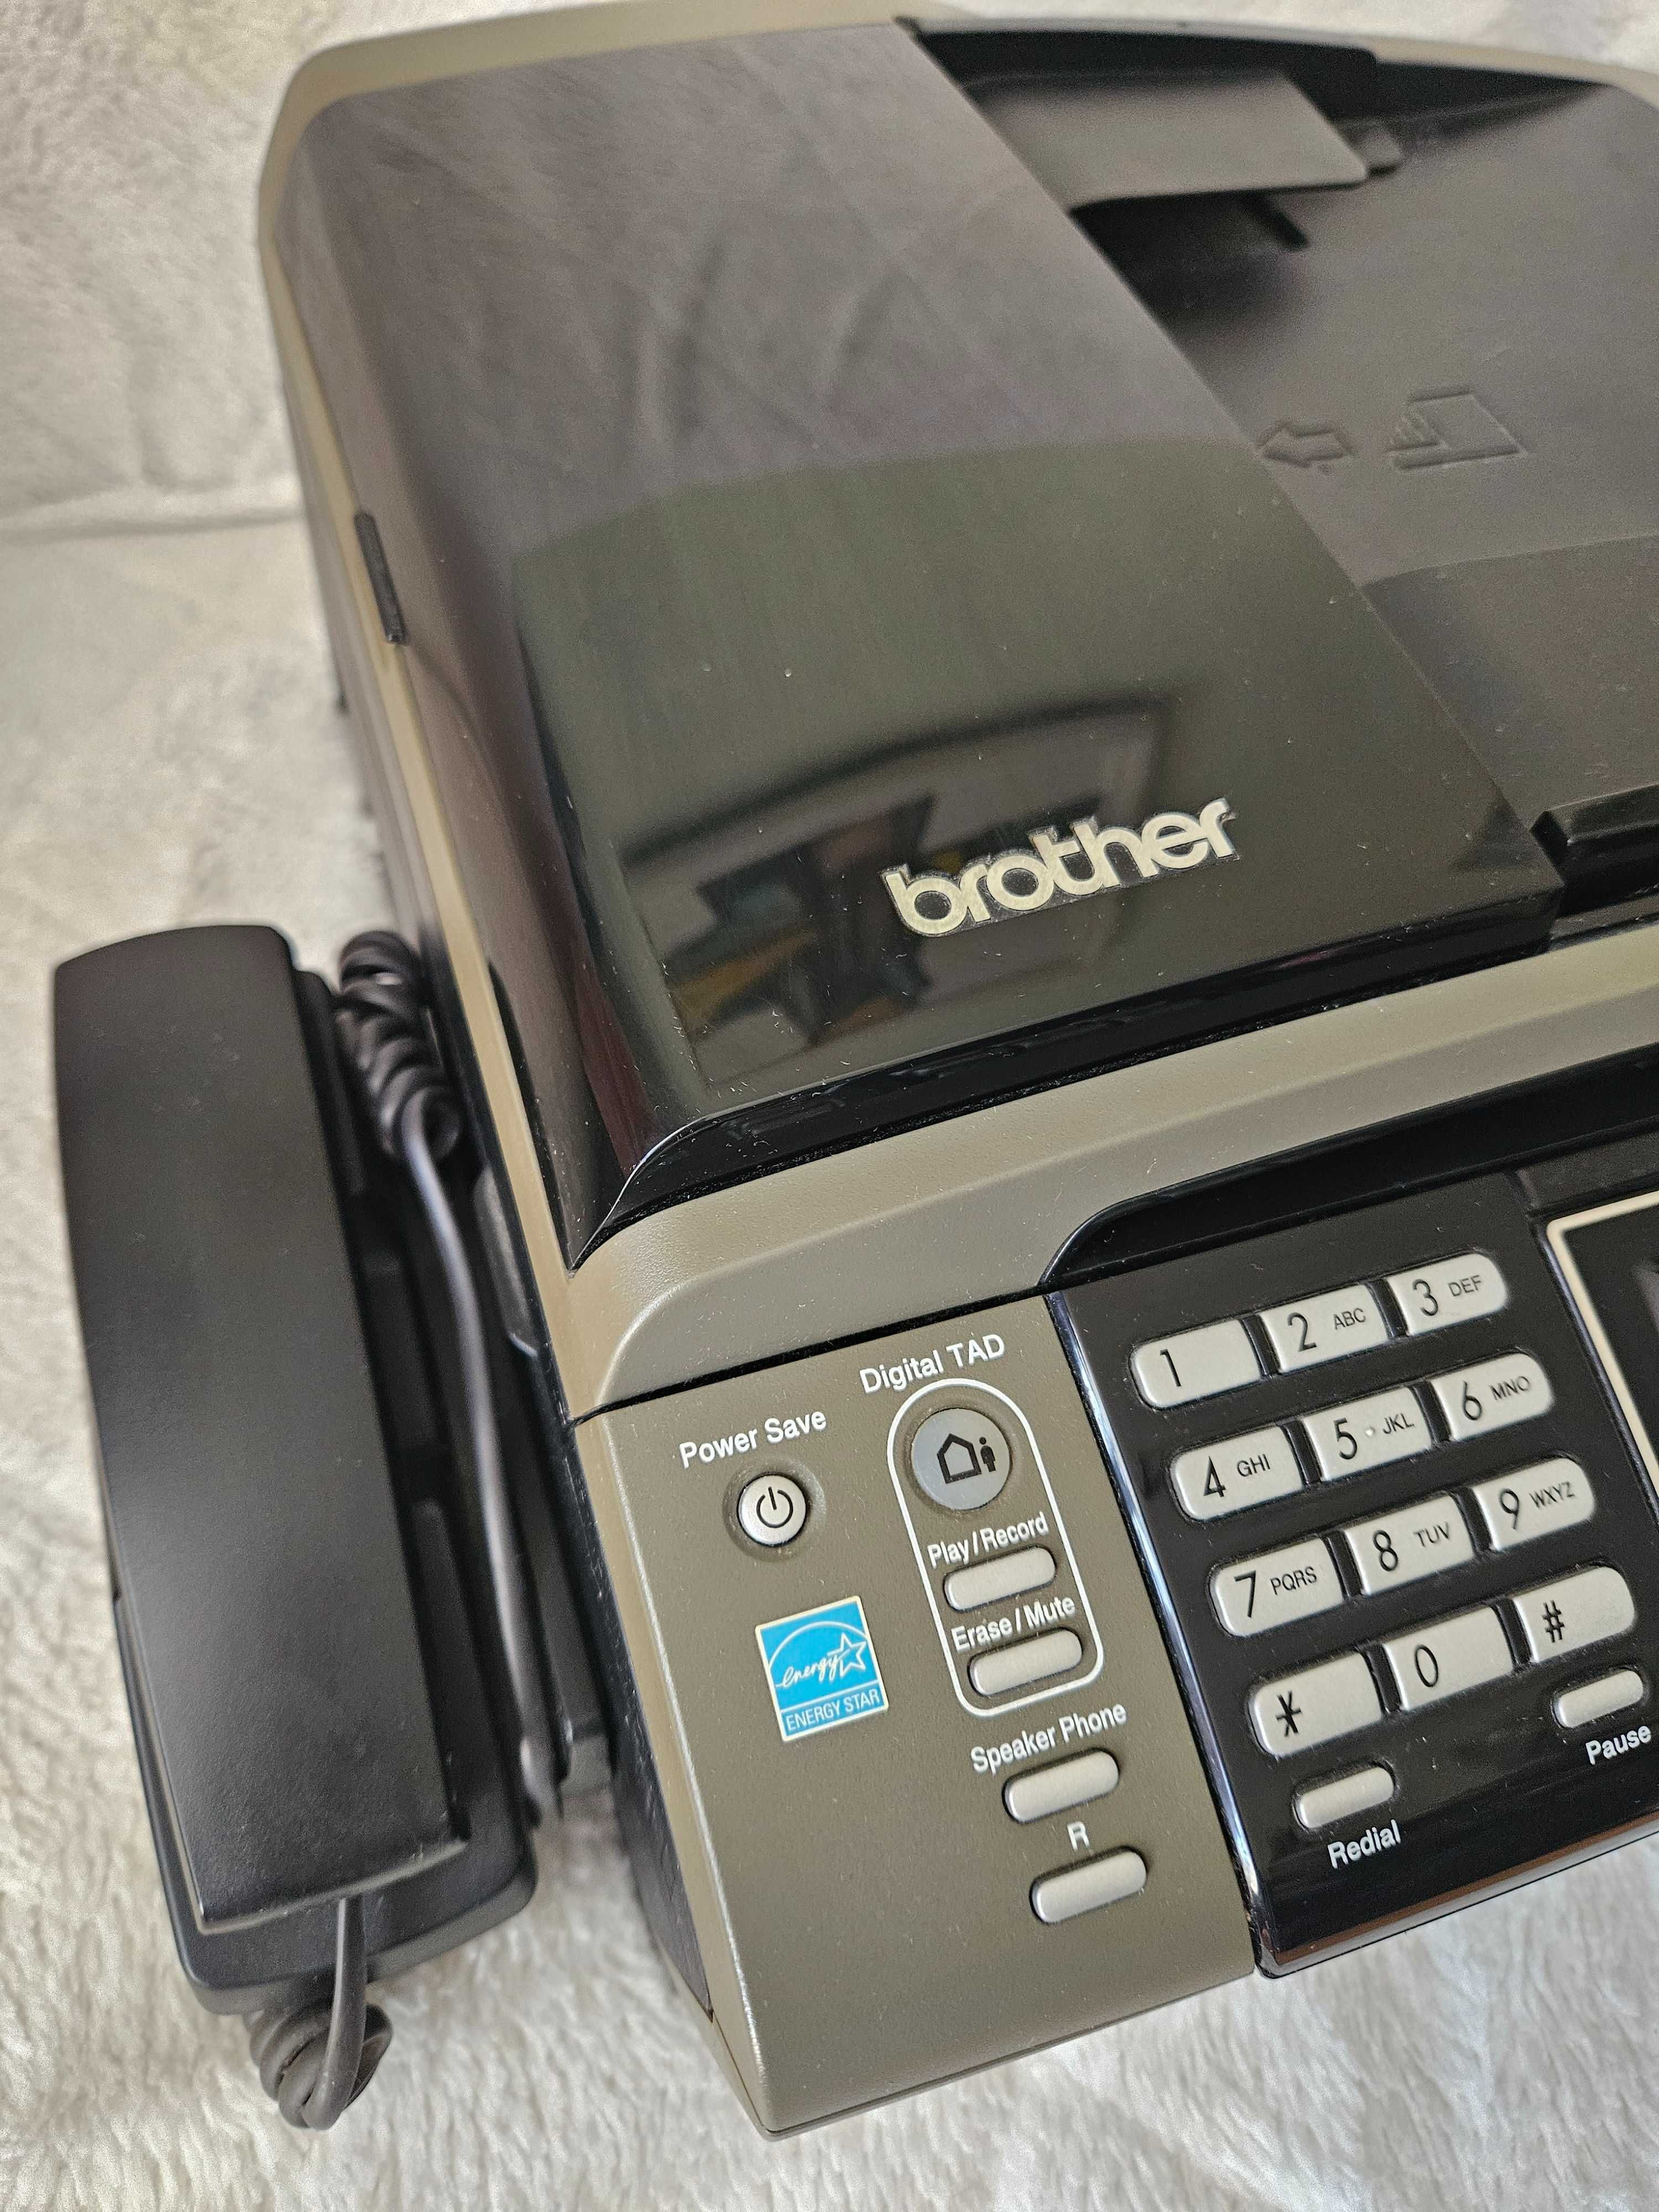 Drukarka firmy brother model MFC-790CW z opcją fax, wifi oraz telefonu